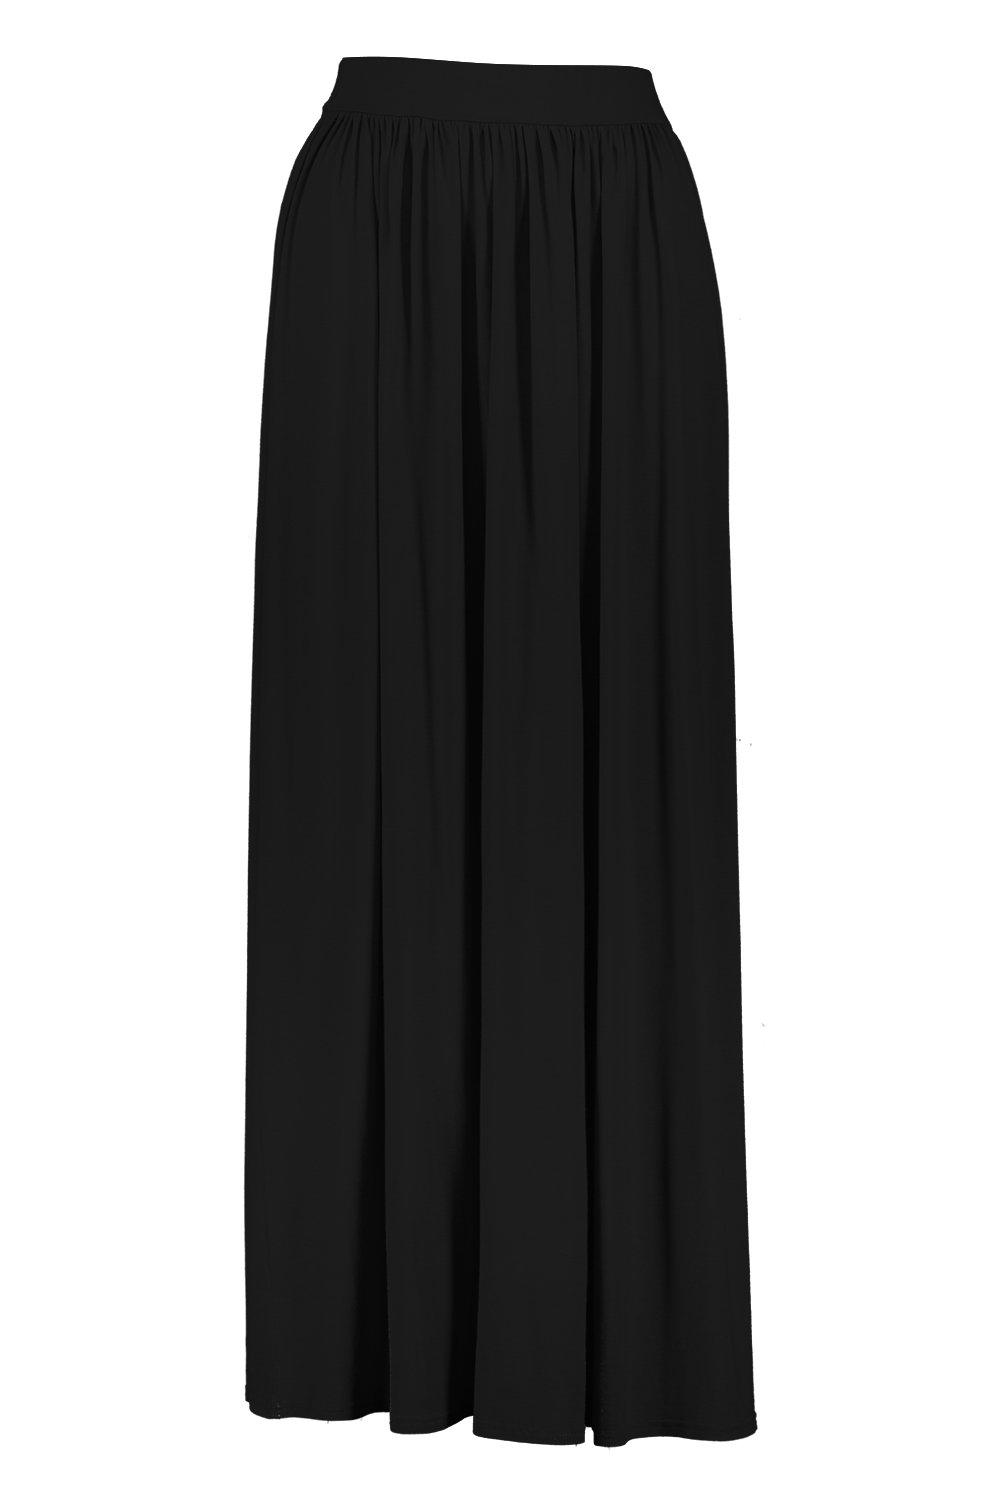 Mujer Ropa de Faldas de Faldas largas Falda Premamá Maxi Básica De Tela Jersey de Boohoo de color Negro 